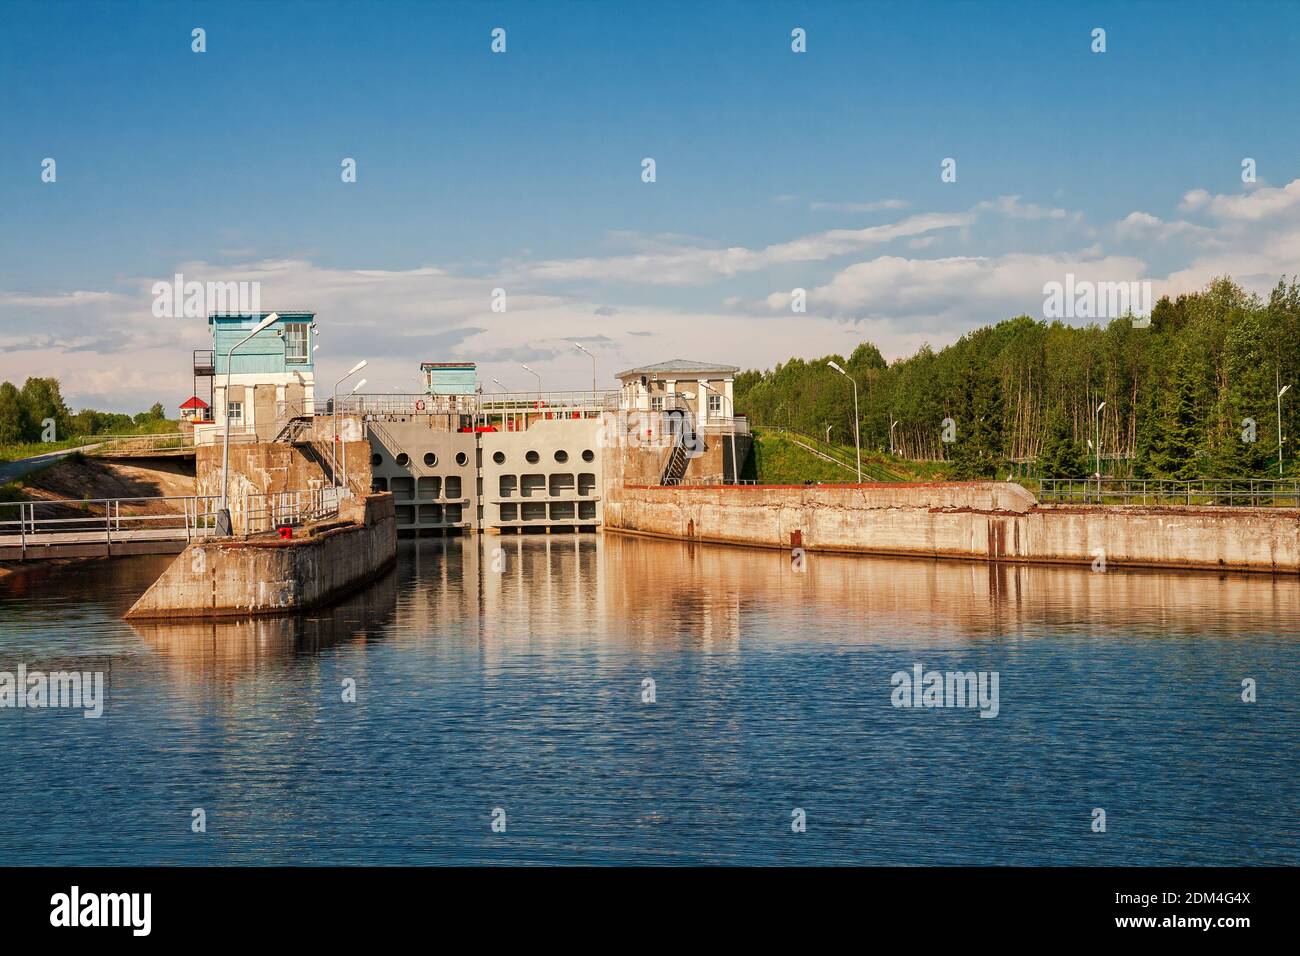 Écluse n° 3 du canal mer Blanche-Baltique, Povenets, Carélie, Russie Banque D'Images